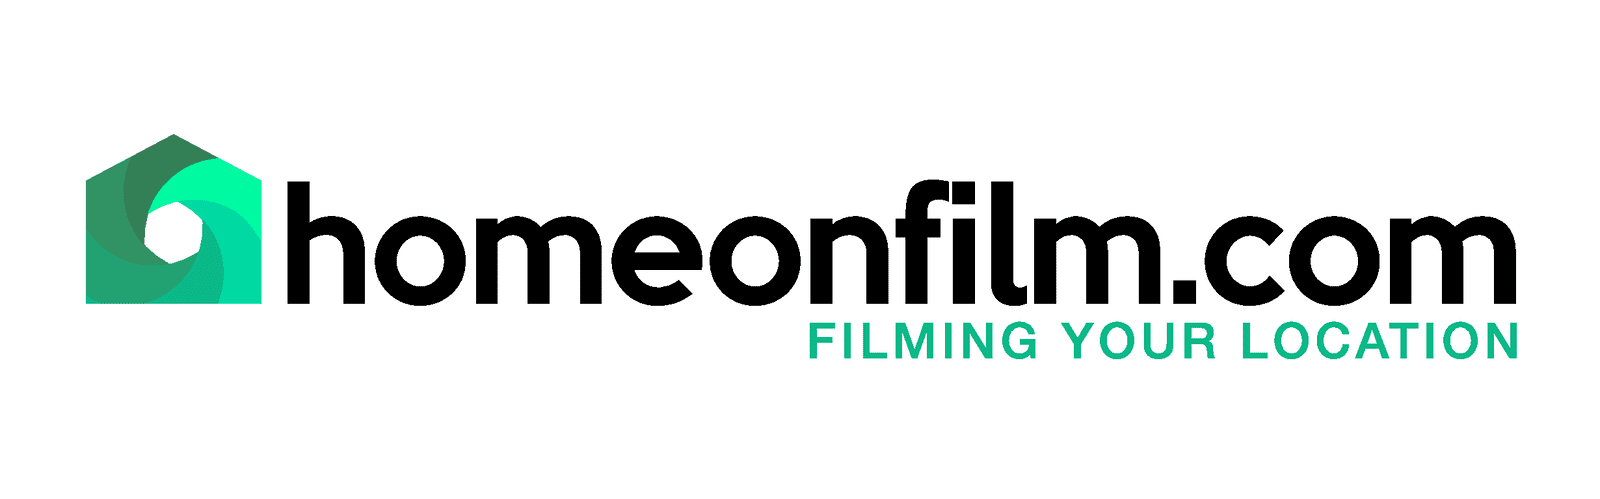 homeonfilm logo